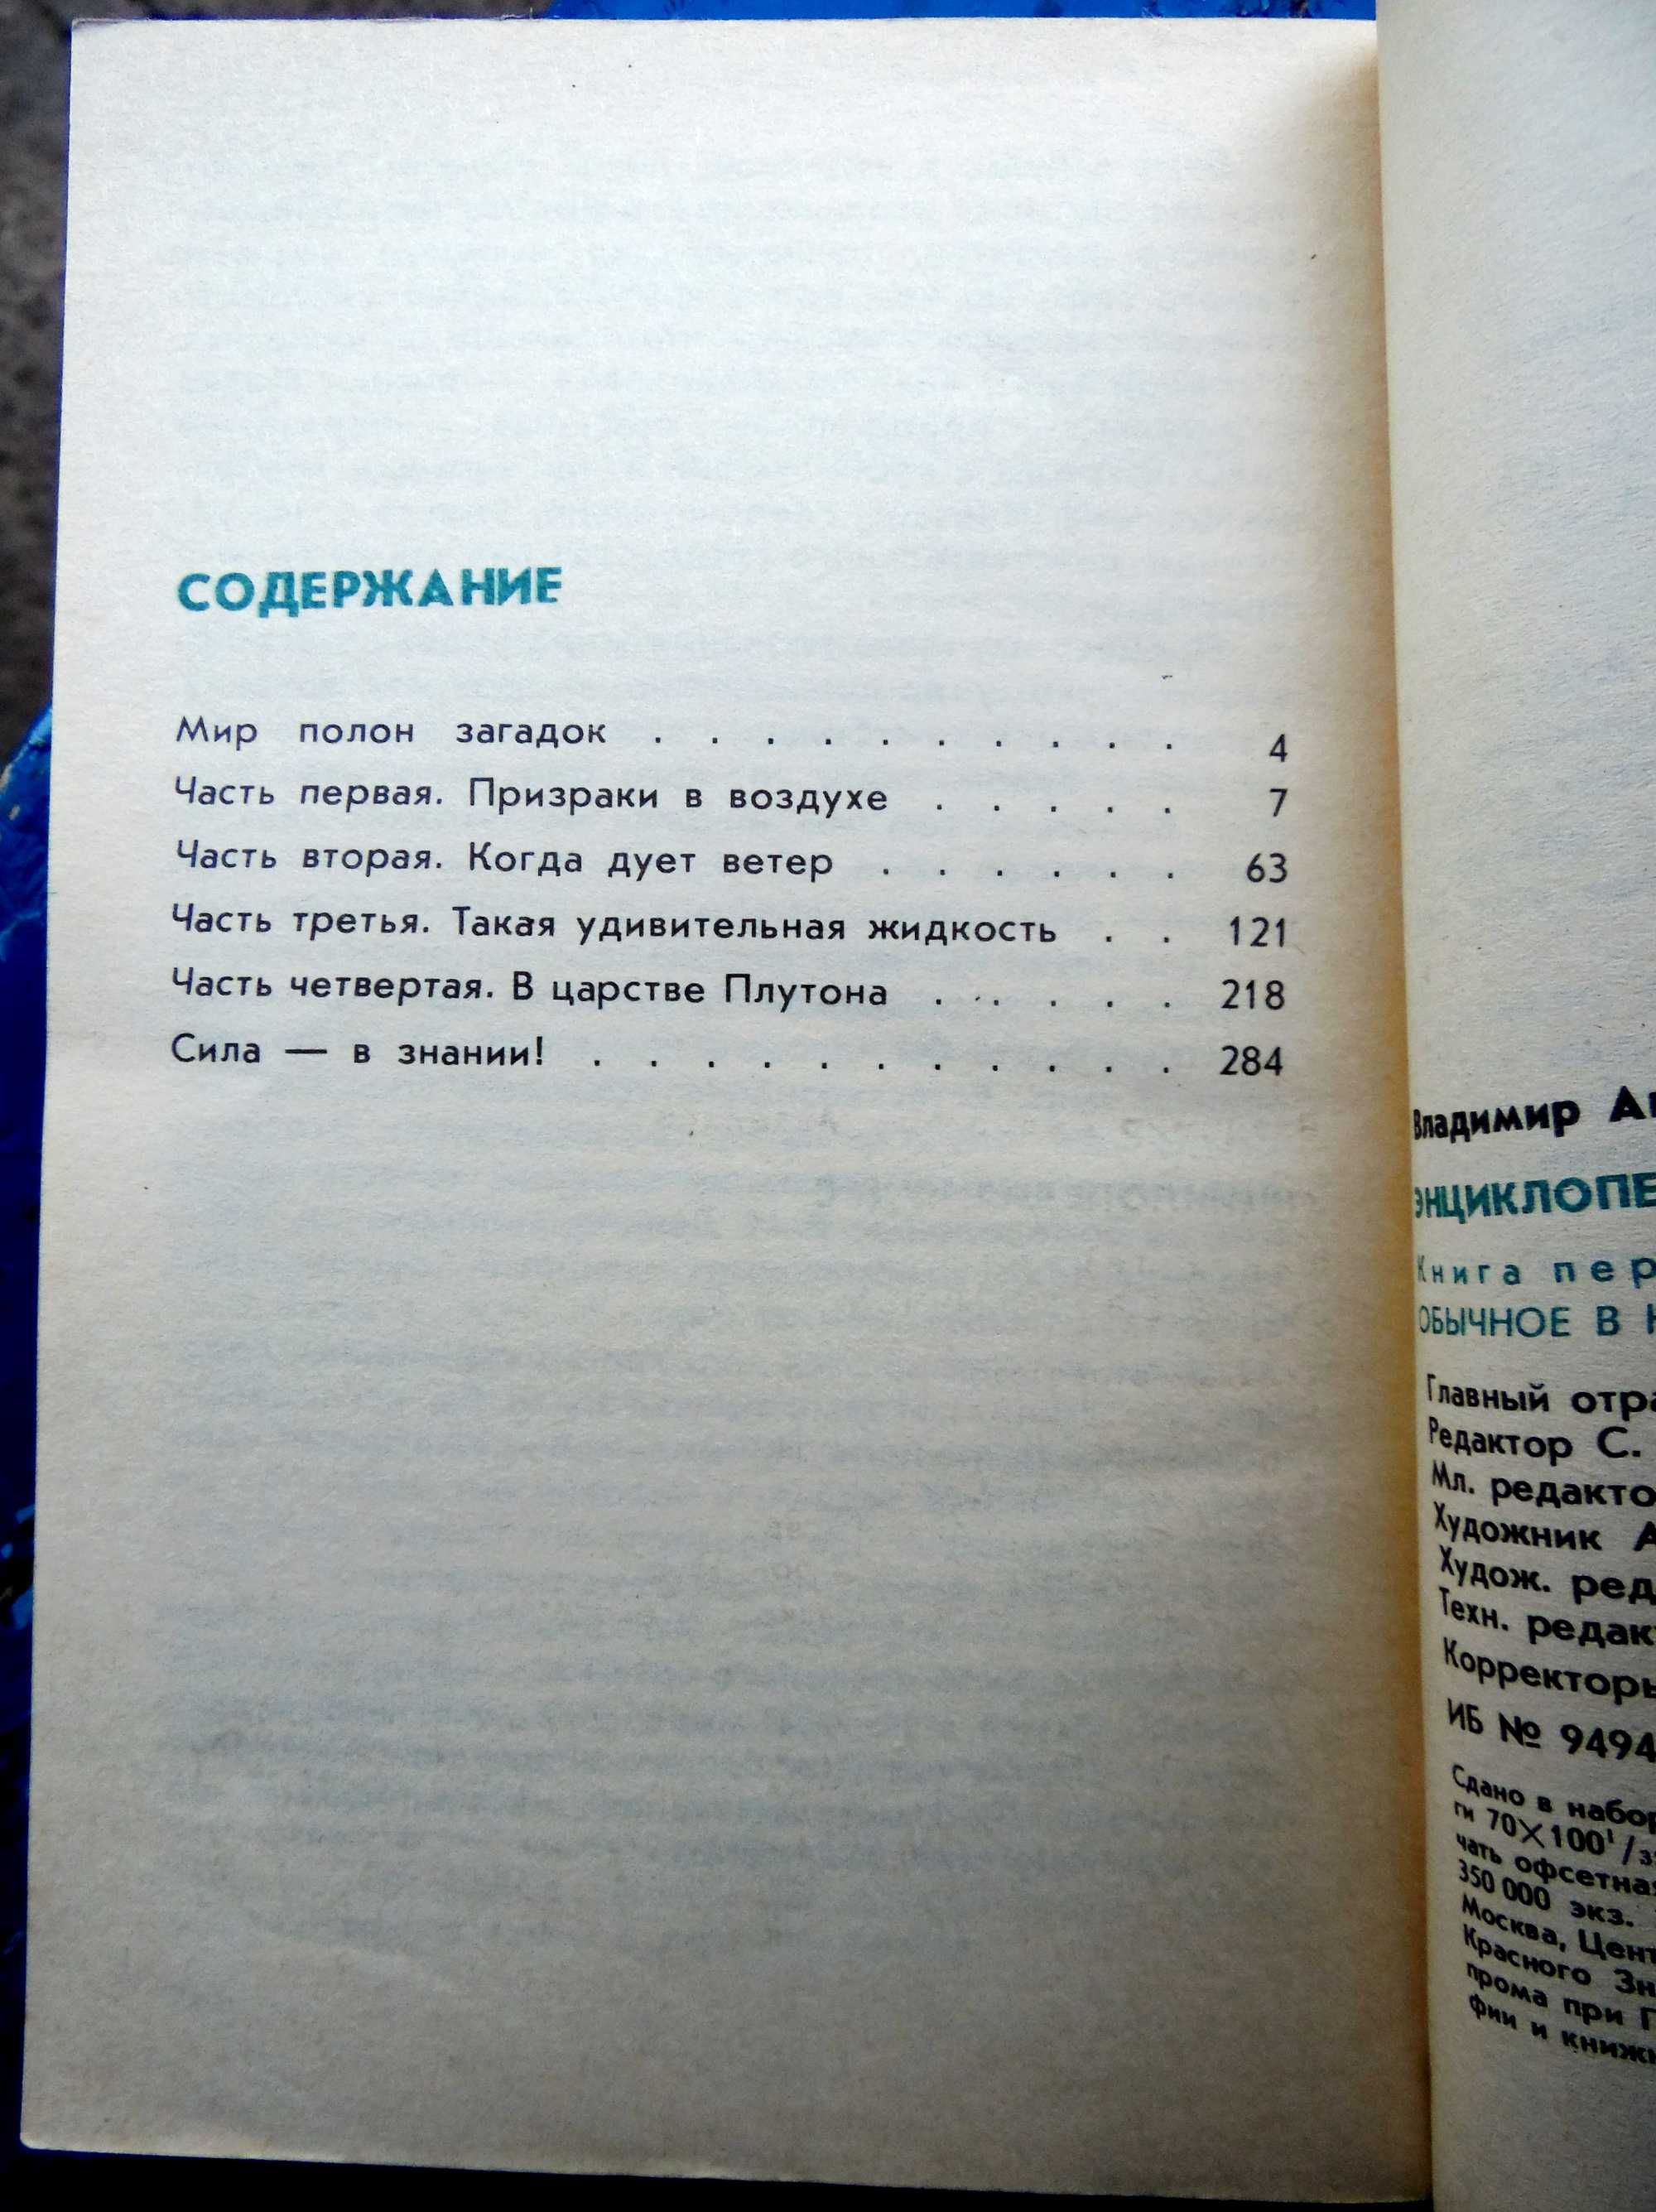 В. Мезенцев. "Энциклопедия чудес". 1988 год.